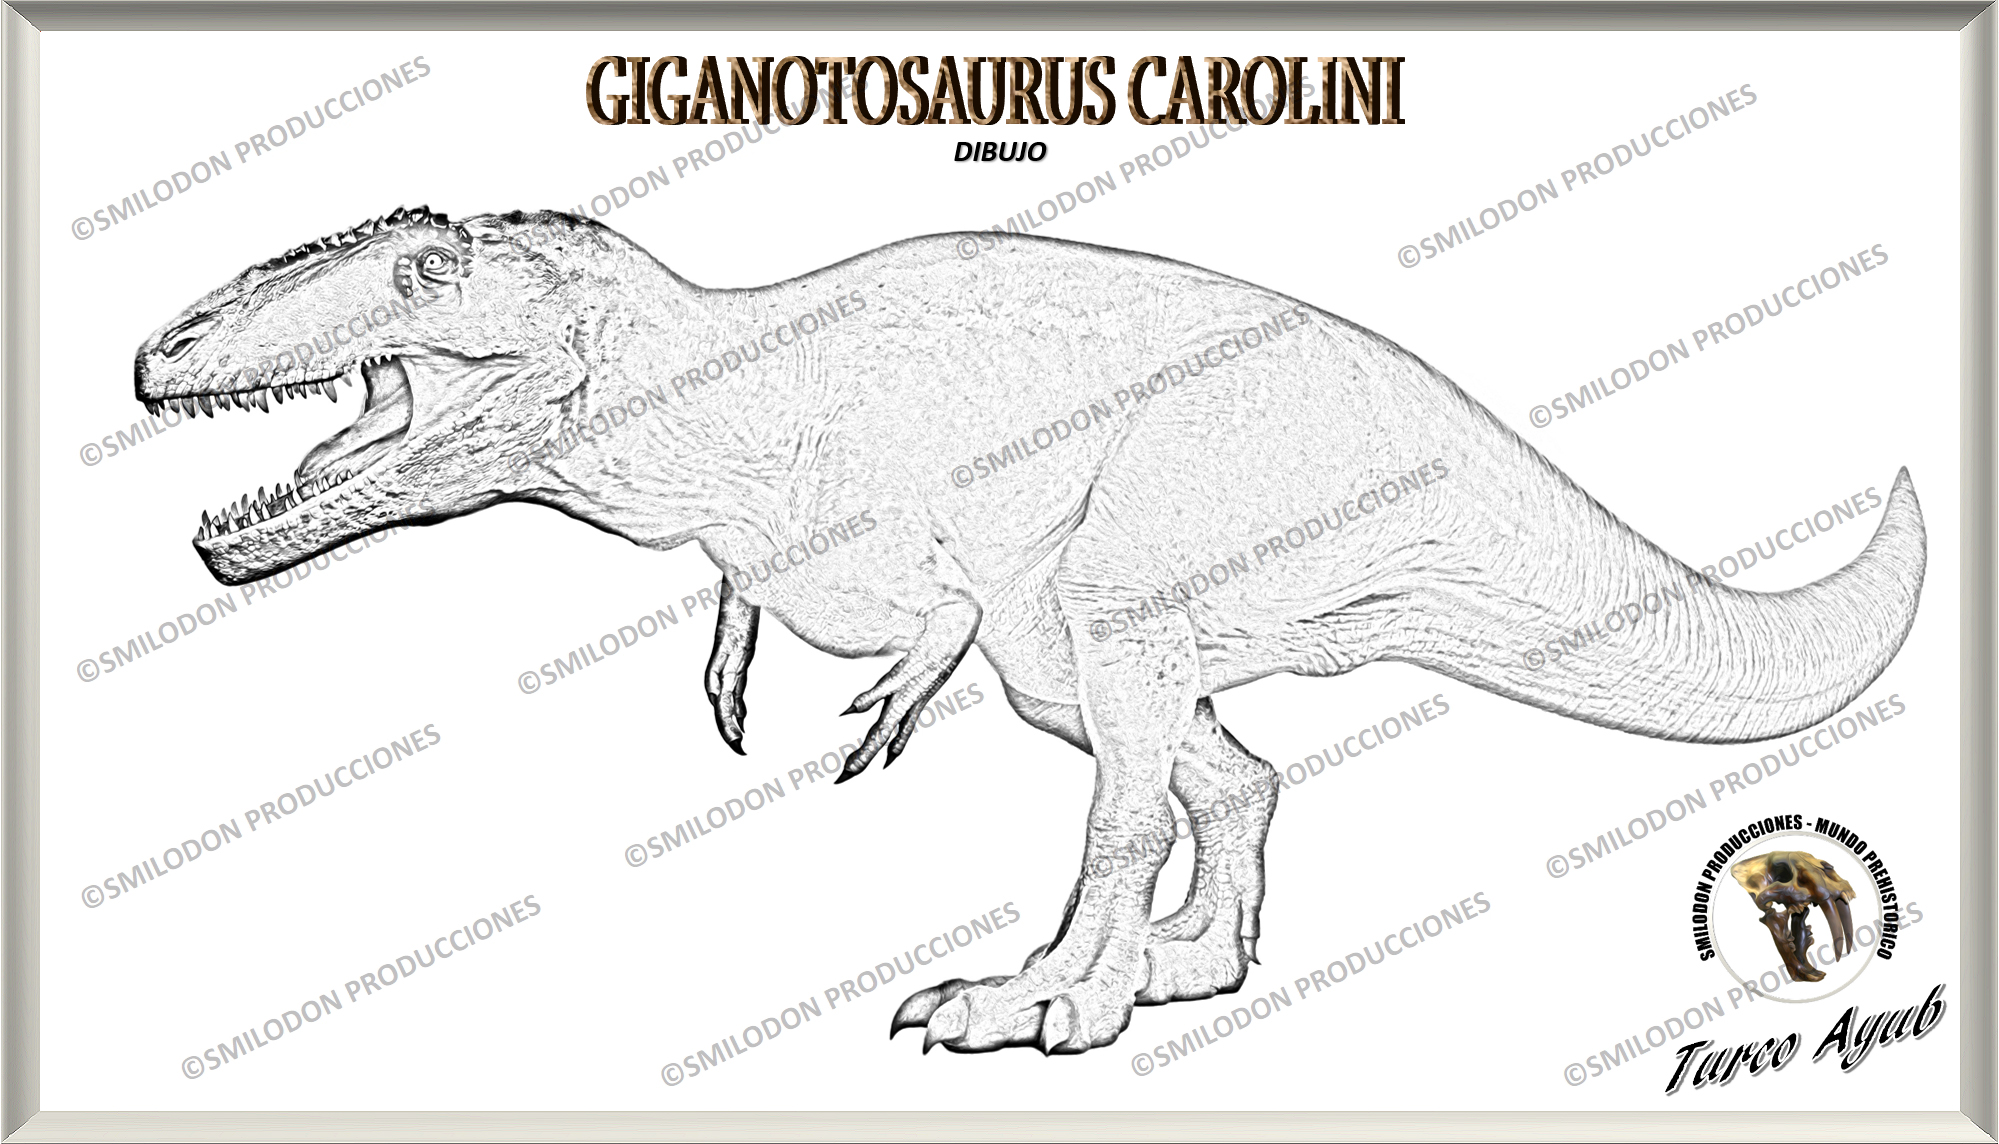 Giganotosaurus carolini (Dibujo) por Turco Ayub by TurcoAyub on DeviantArt